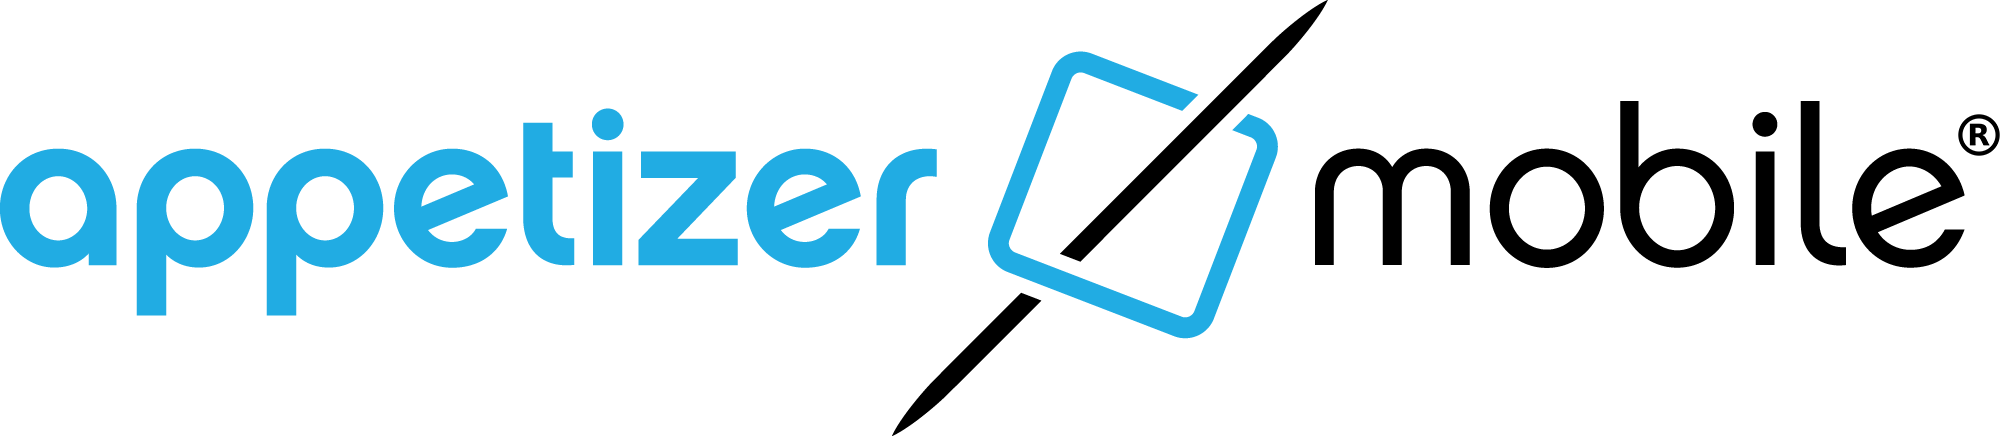 Appetizer Logo (2000x436)